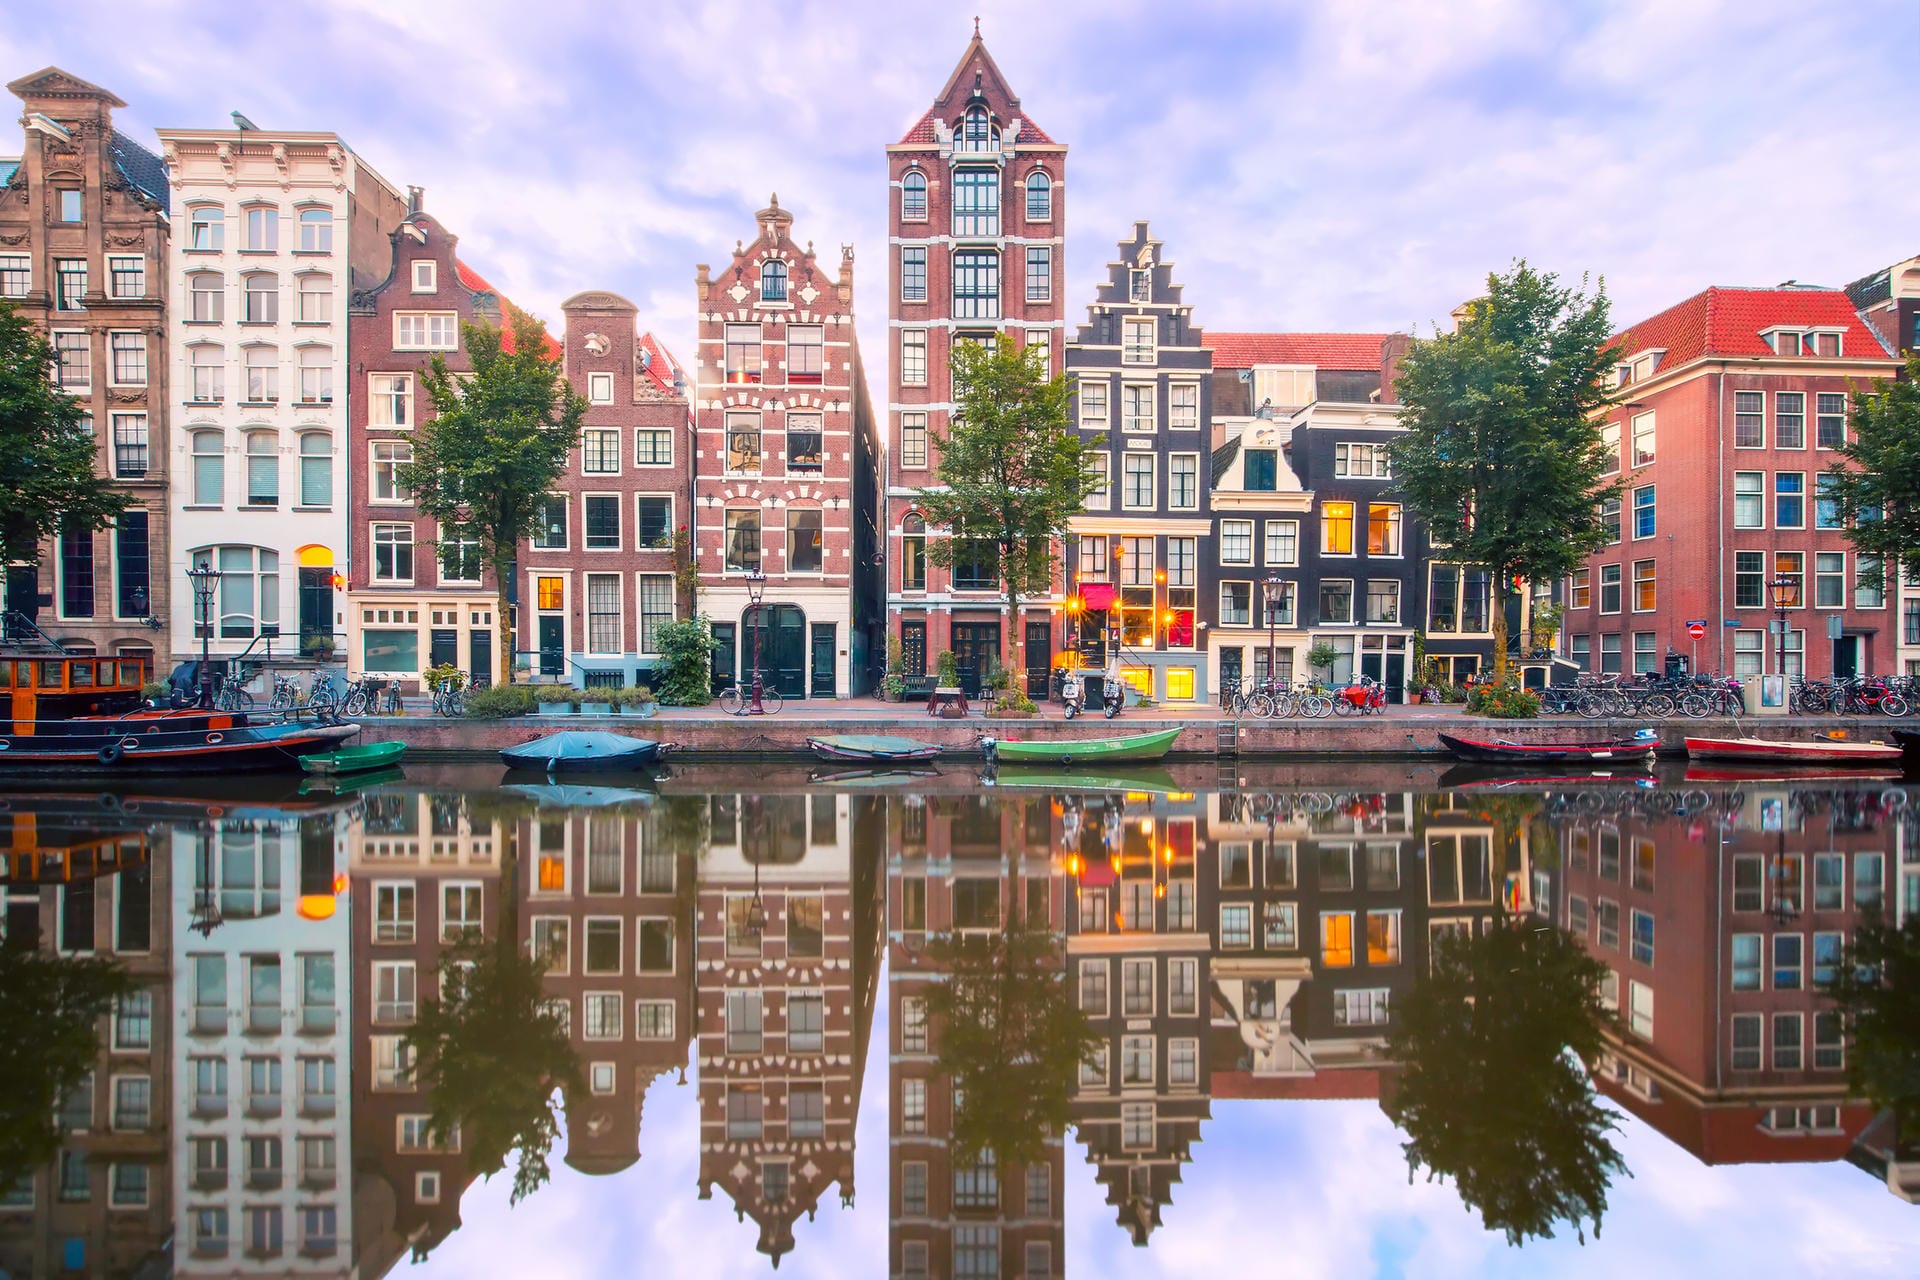 Amsterdam: Viele der Besucher besuchen die niederländische Hauptstadt Amsterdam nicht wegen der malerischen Grachten, sondern um ausgelassen Partys zu feiern.